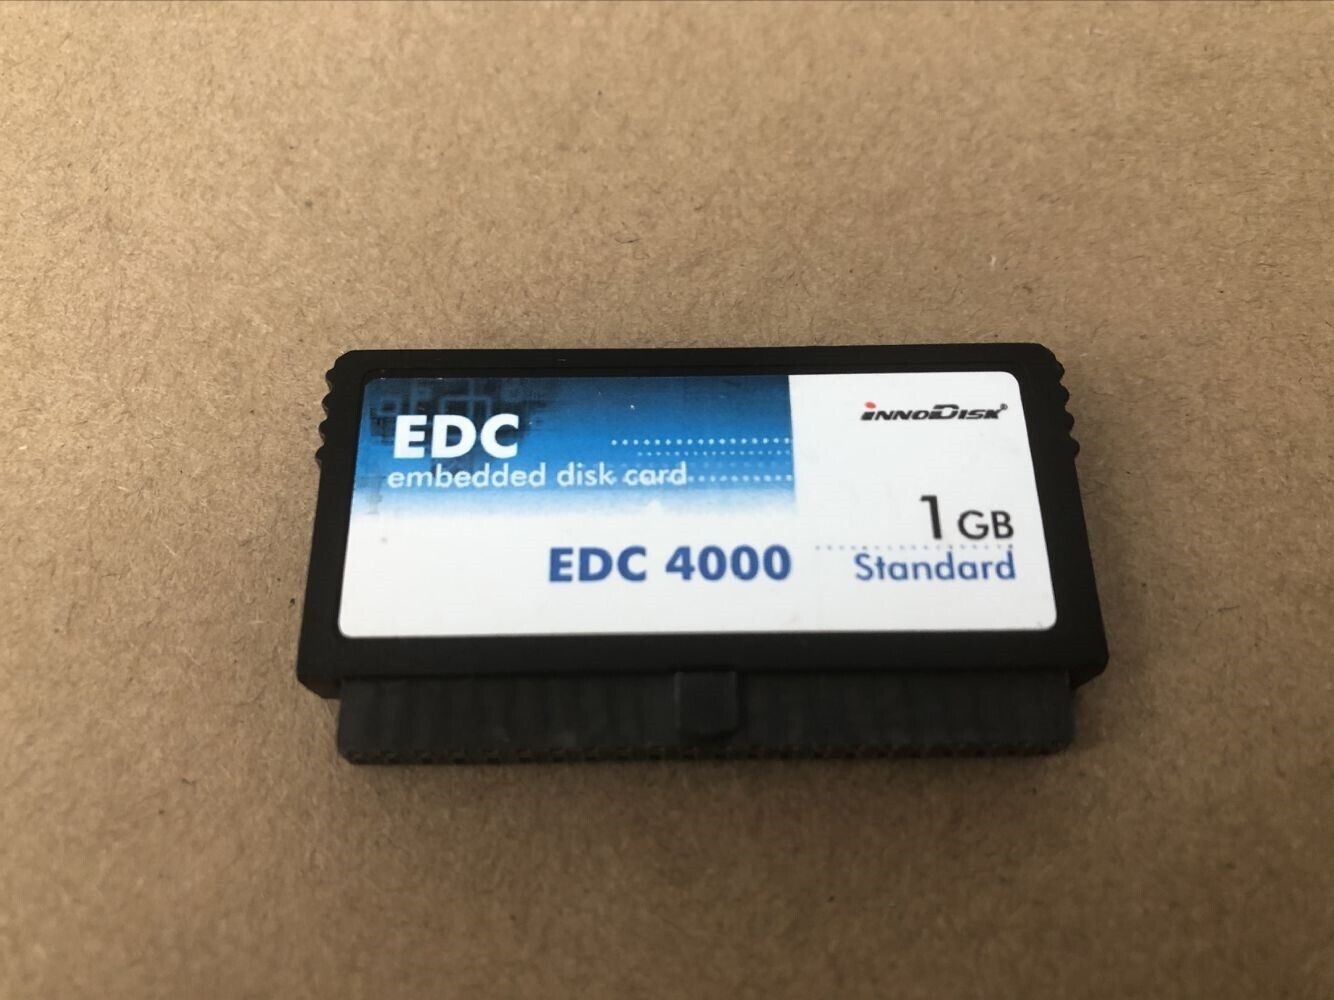 EDC 1GB embedded disk card iNNODISK EDC 4000 44pin DOM 1GB